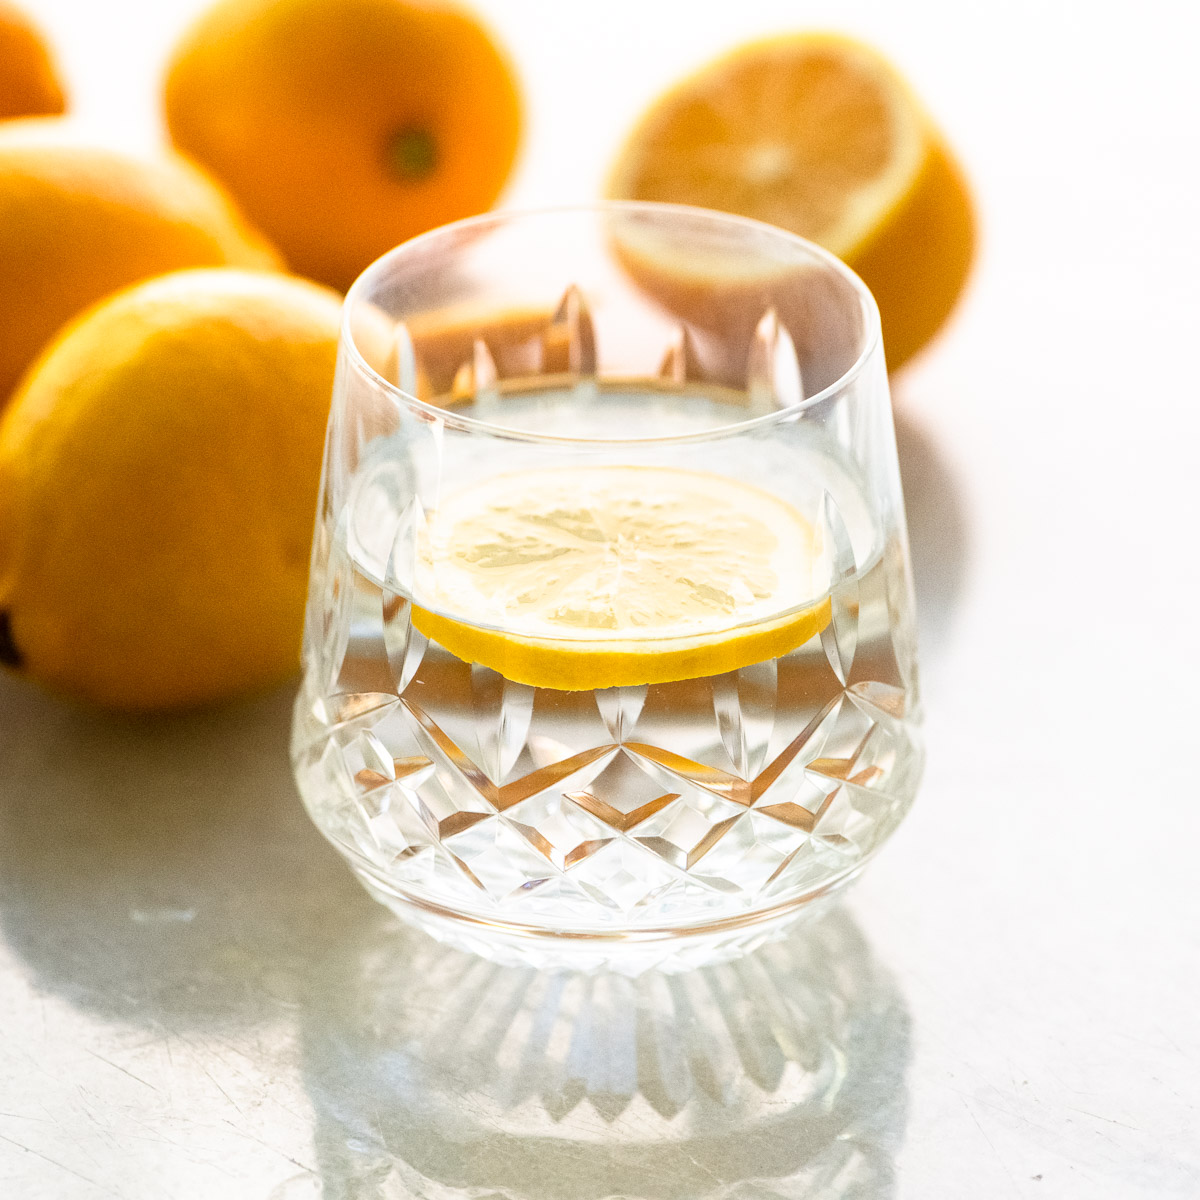 Un vaso de agua de limón con limones enteros.